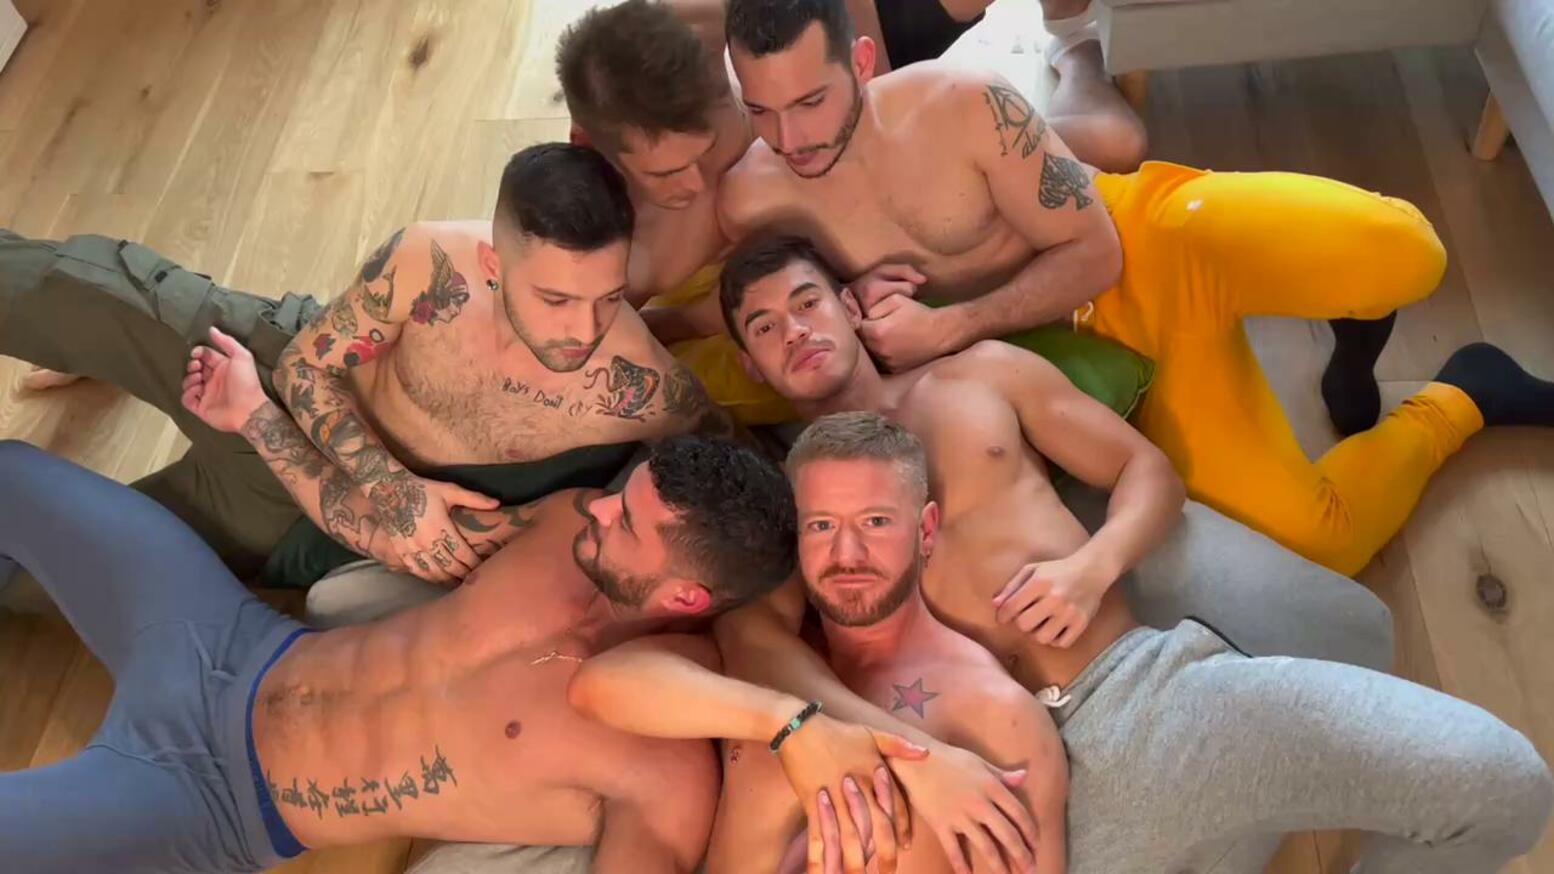 Hot Orgy Between 6 Orgy Friends